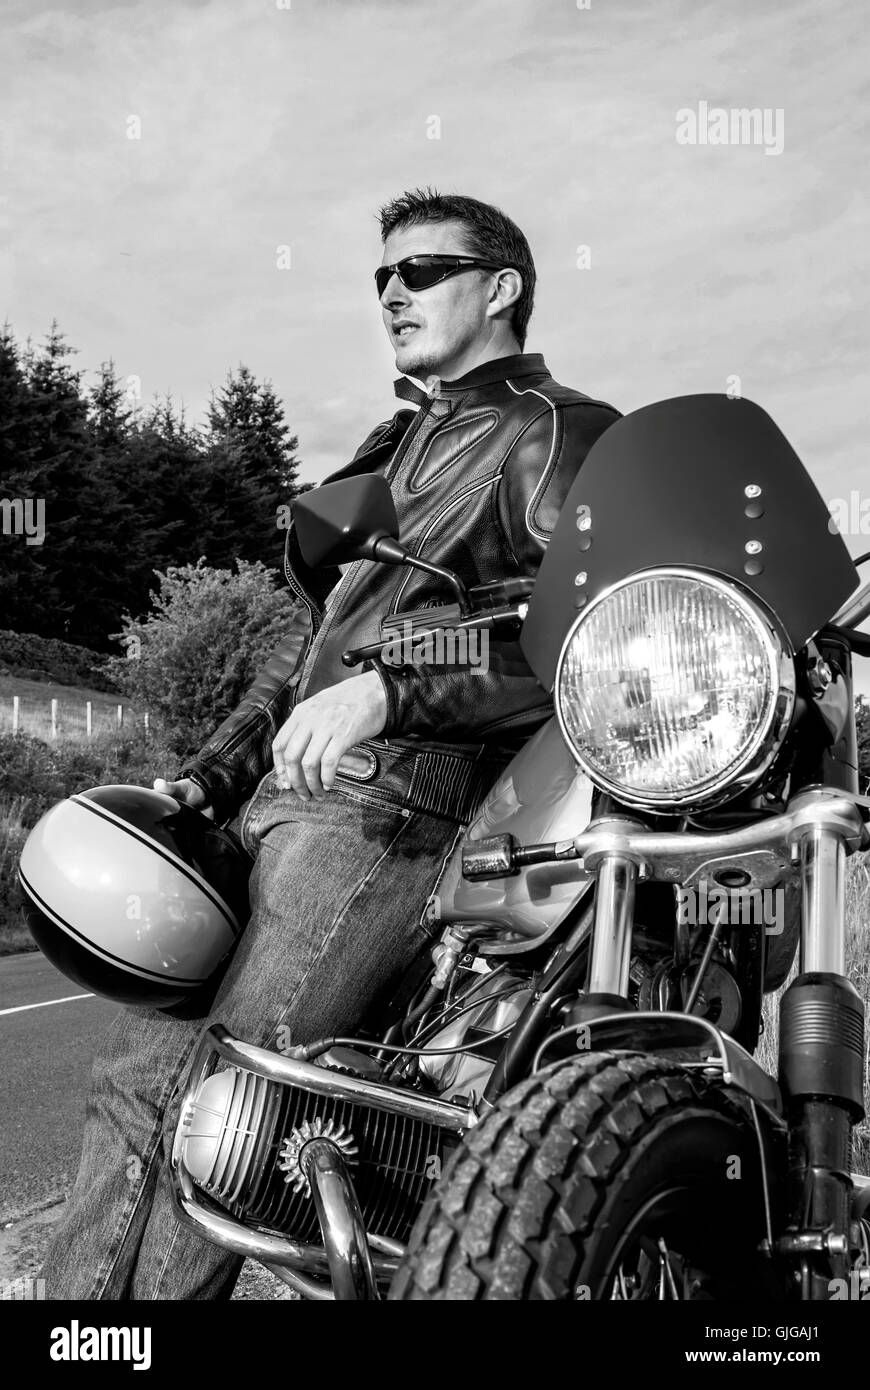 Man leaning on motorbiker holding moto veste en cuir casque lunettes mec cool retro noir et blanc Banque D'Images